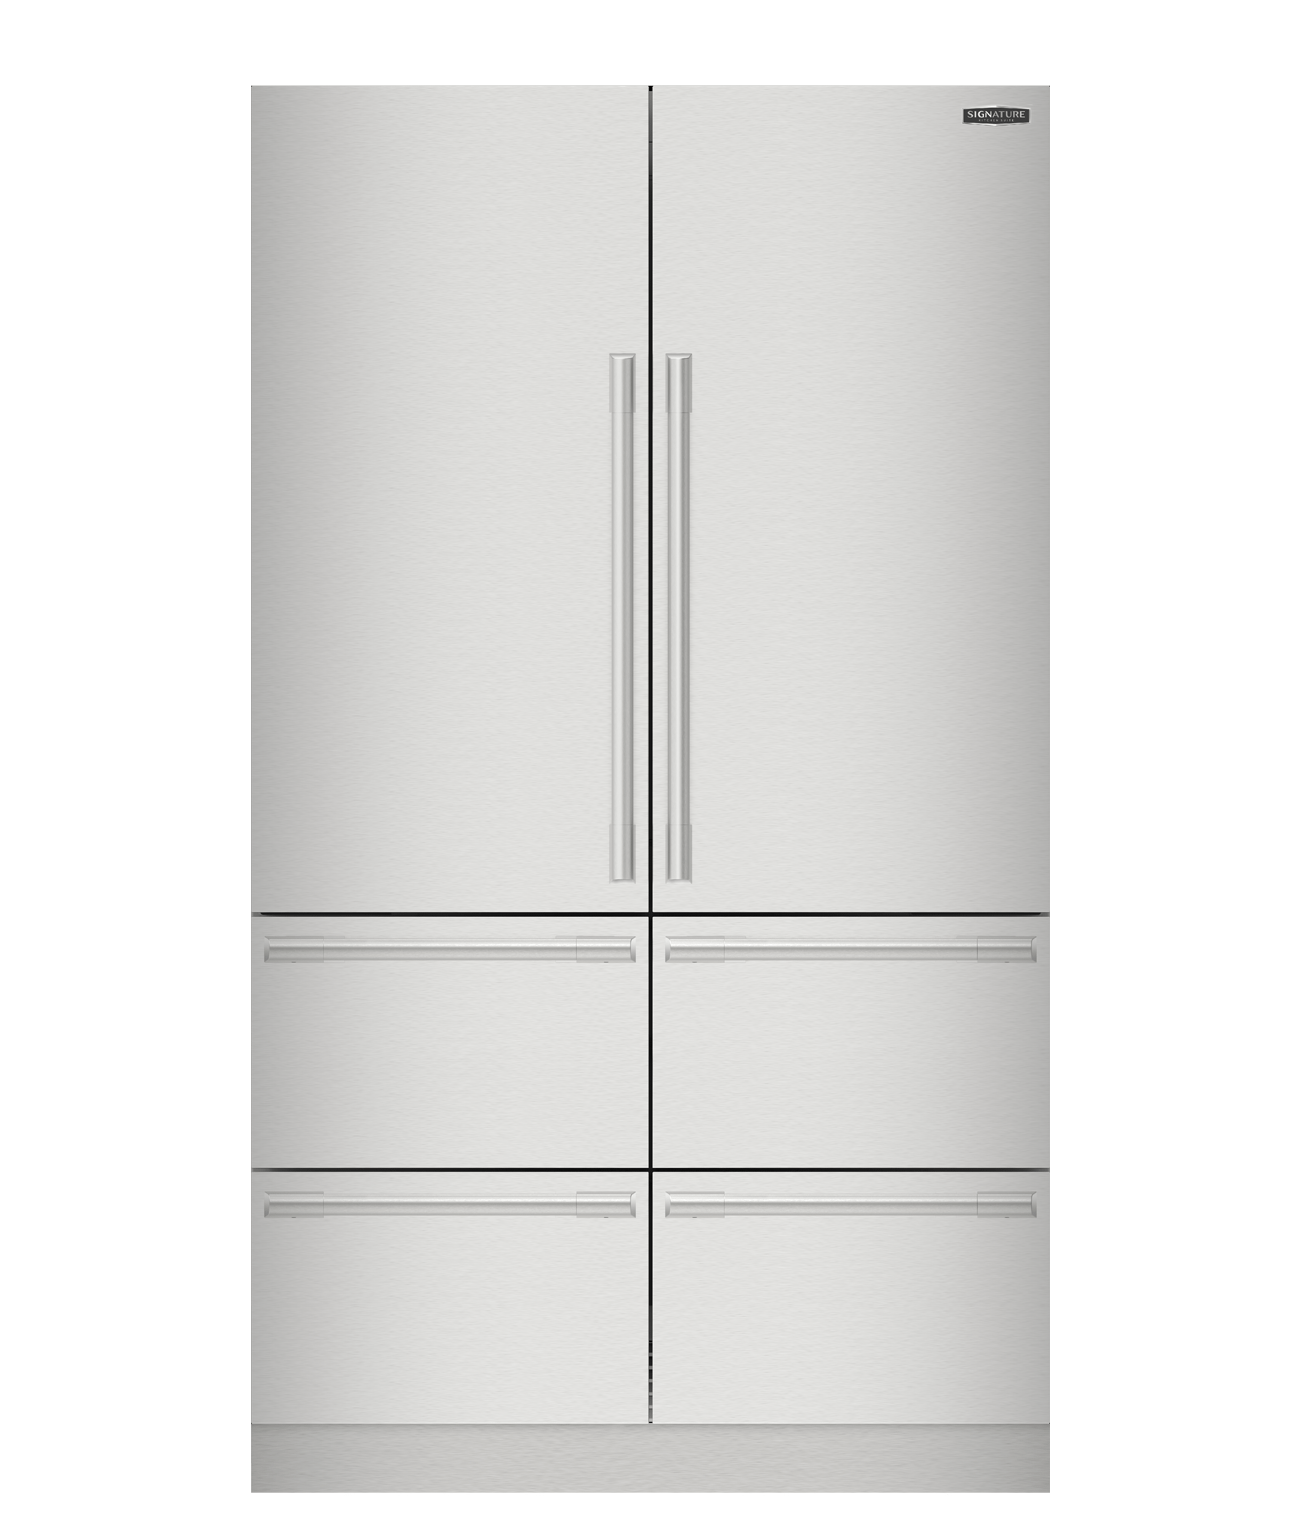 Signature Kitchen Suite SKSFD4826P 48-Inch Built-In French Door Refrigerator